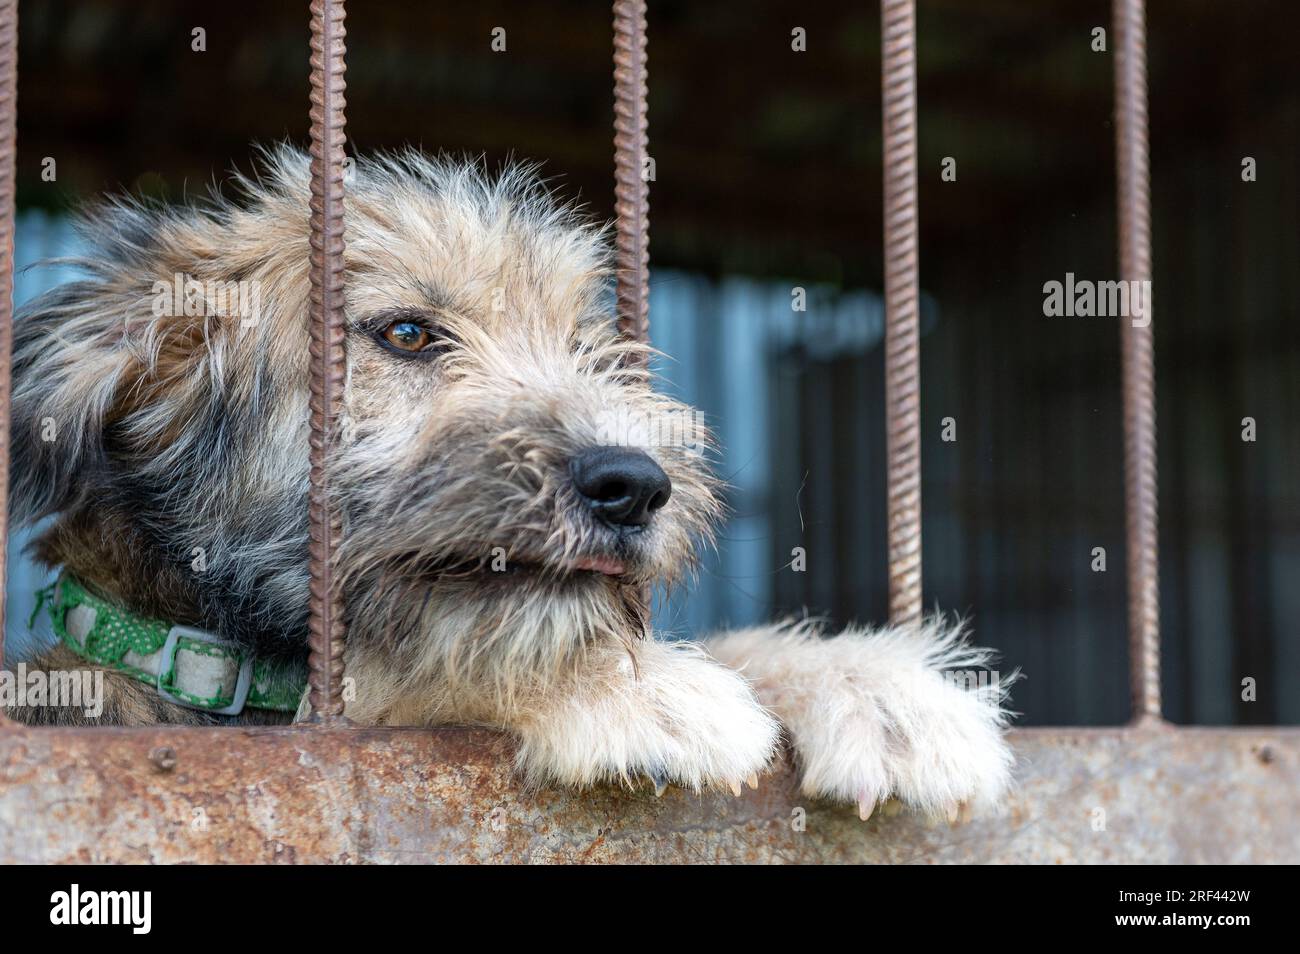 Perro callejero en refugio de animales esperando la adopción. Retrato de perro sin hogar en jaula de refugio de animales. Perro detrás de las vallas Foto de stock